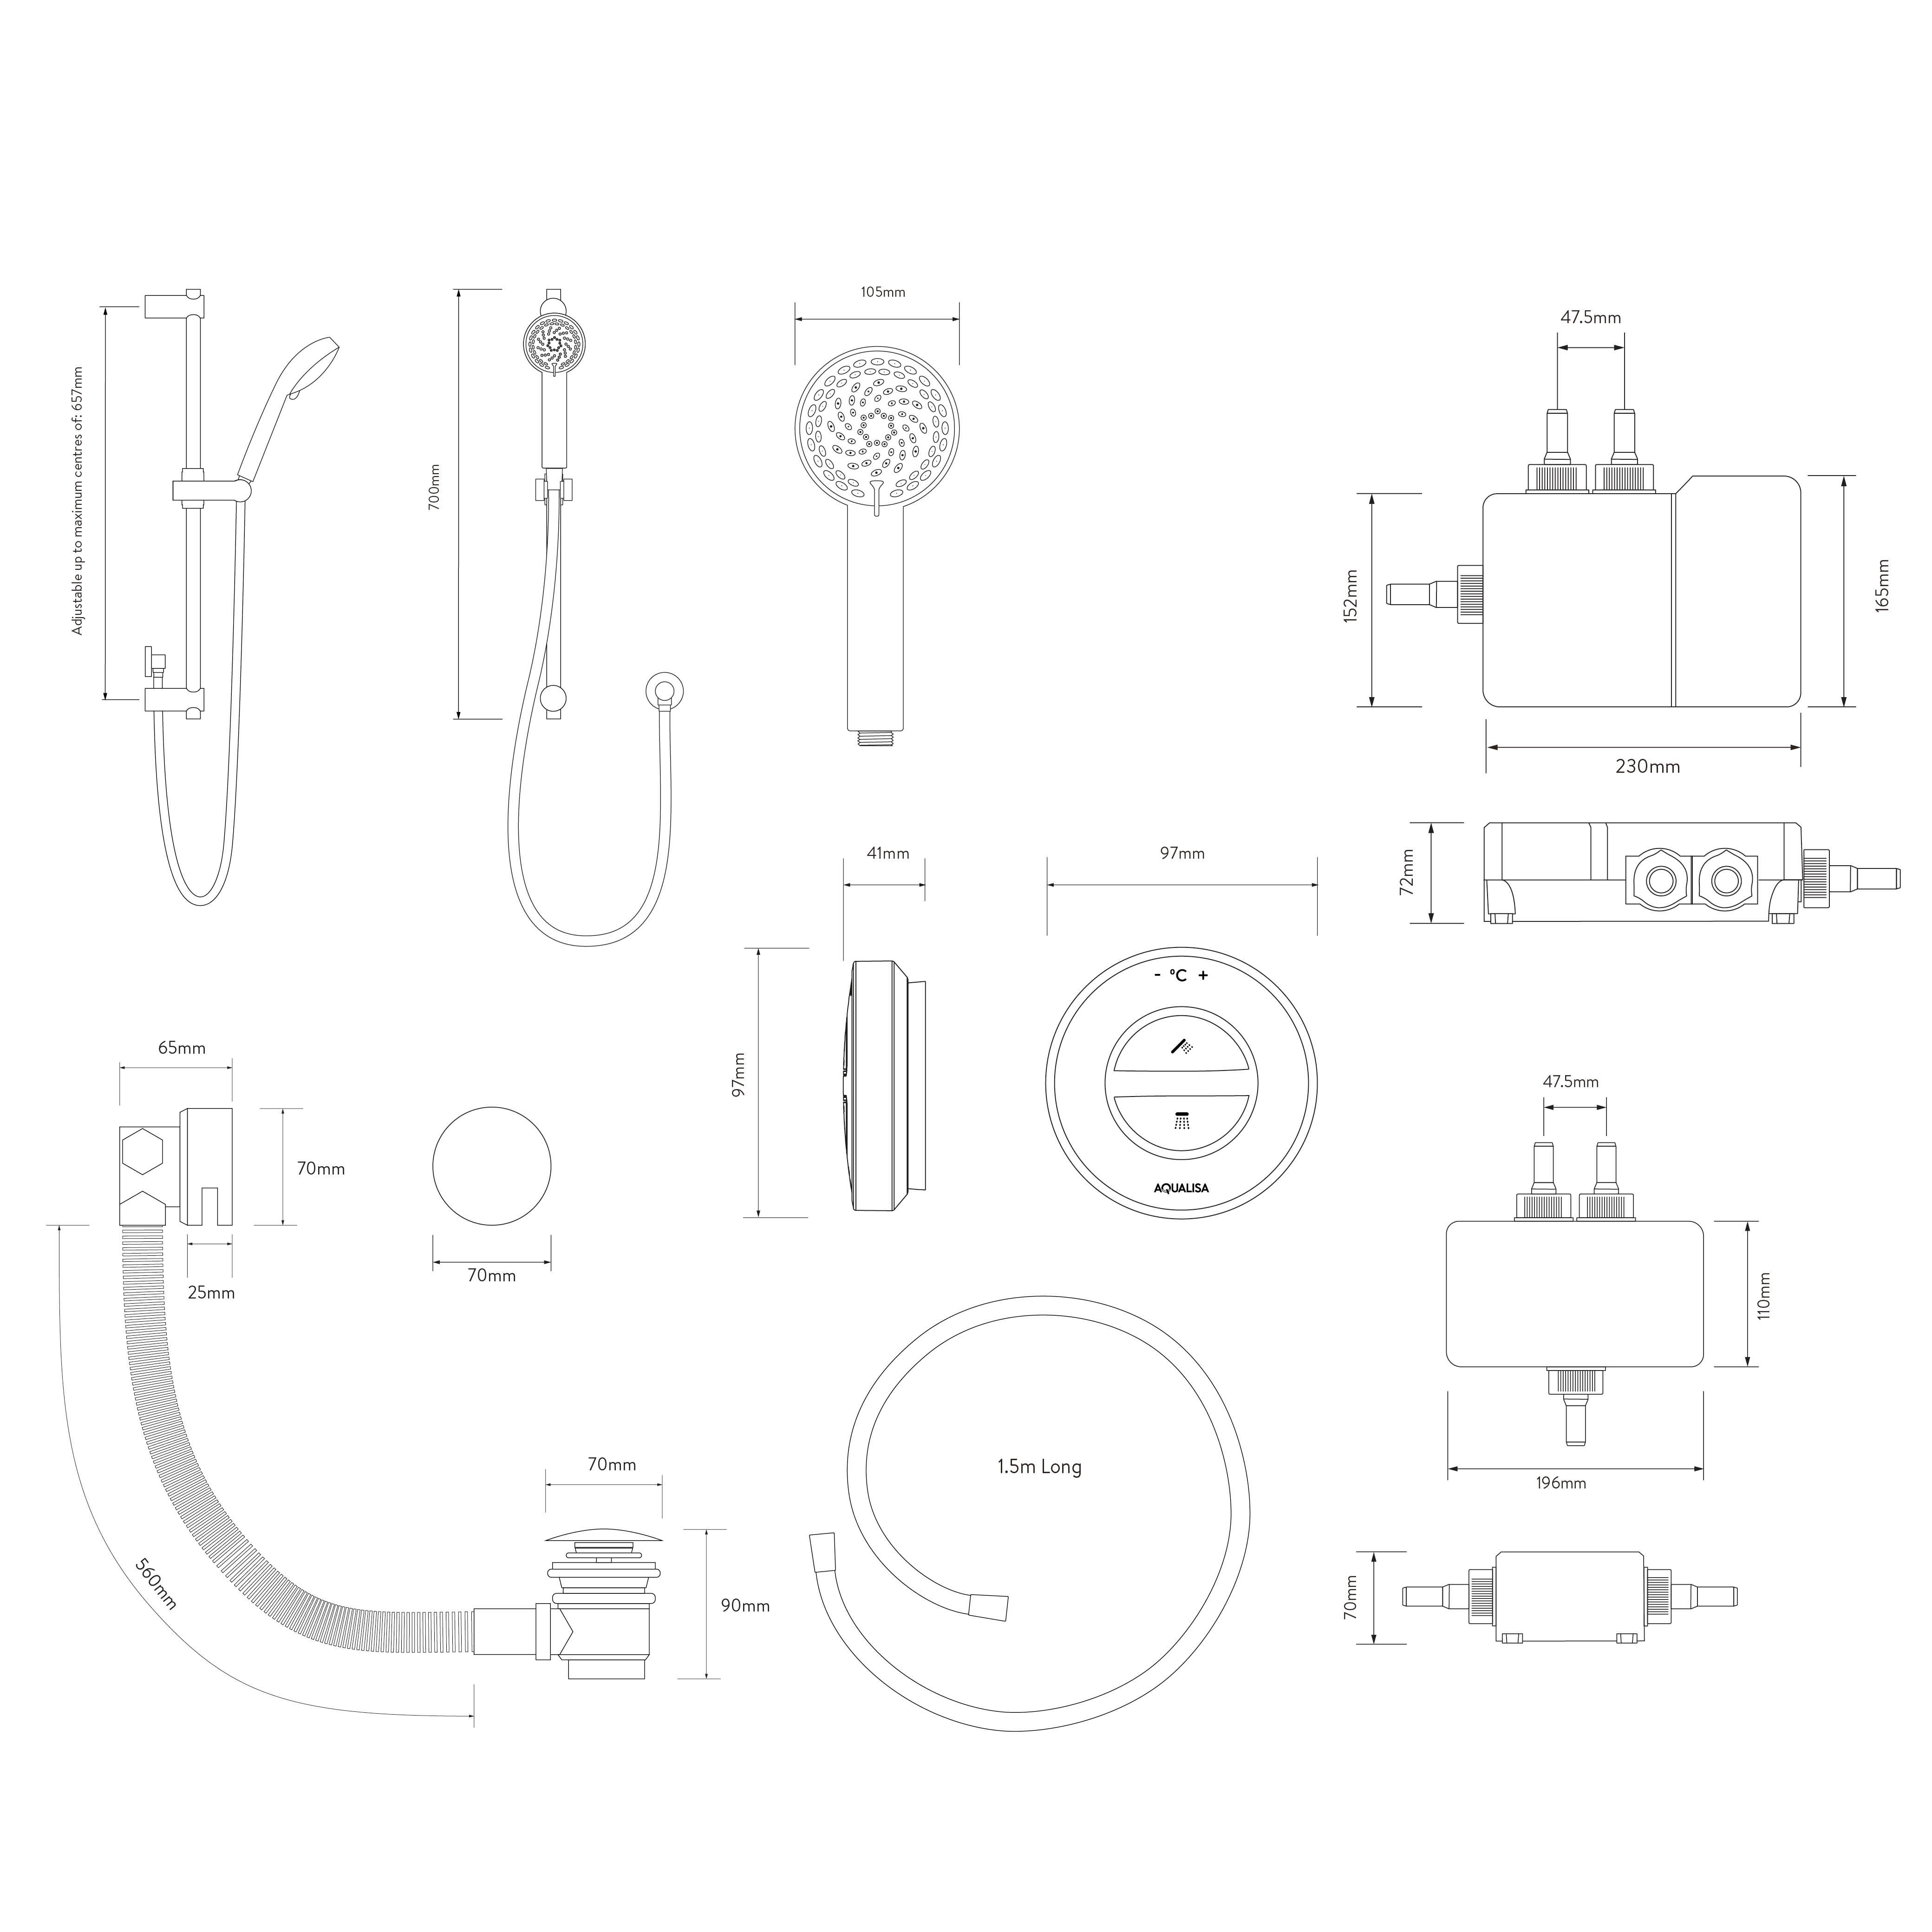 Aqualisa Smart Link Concealed valve HP/Combi Digital Shower with overflow bath filler & Adjustable head